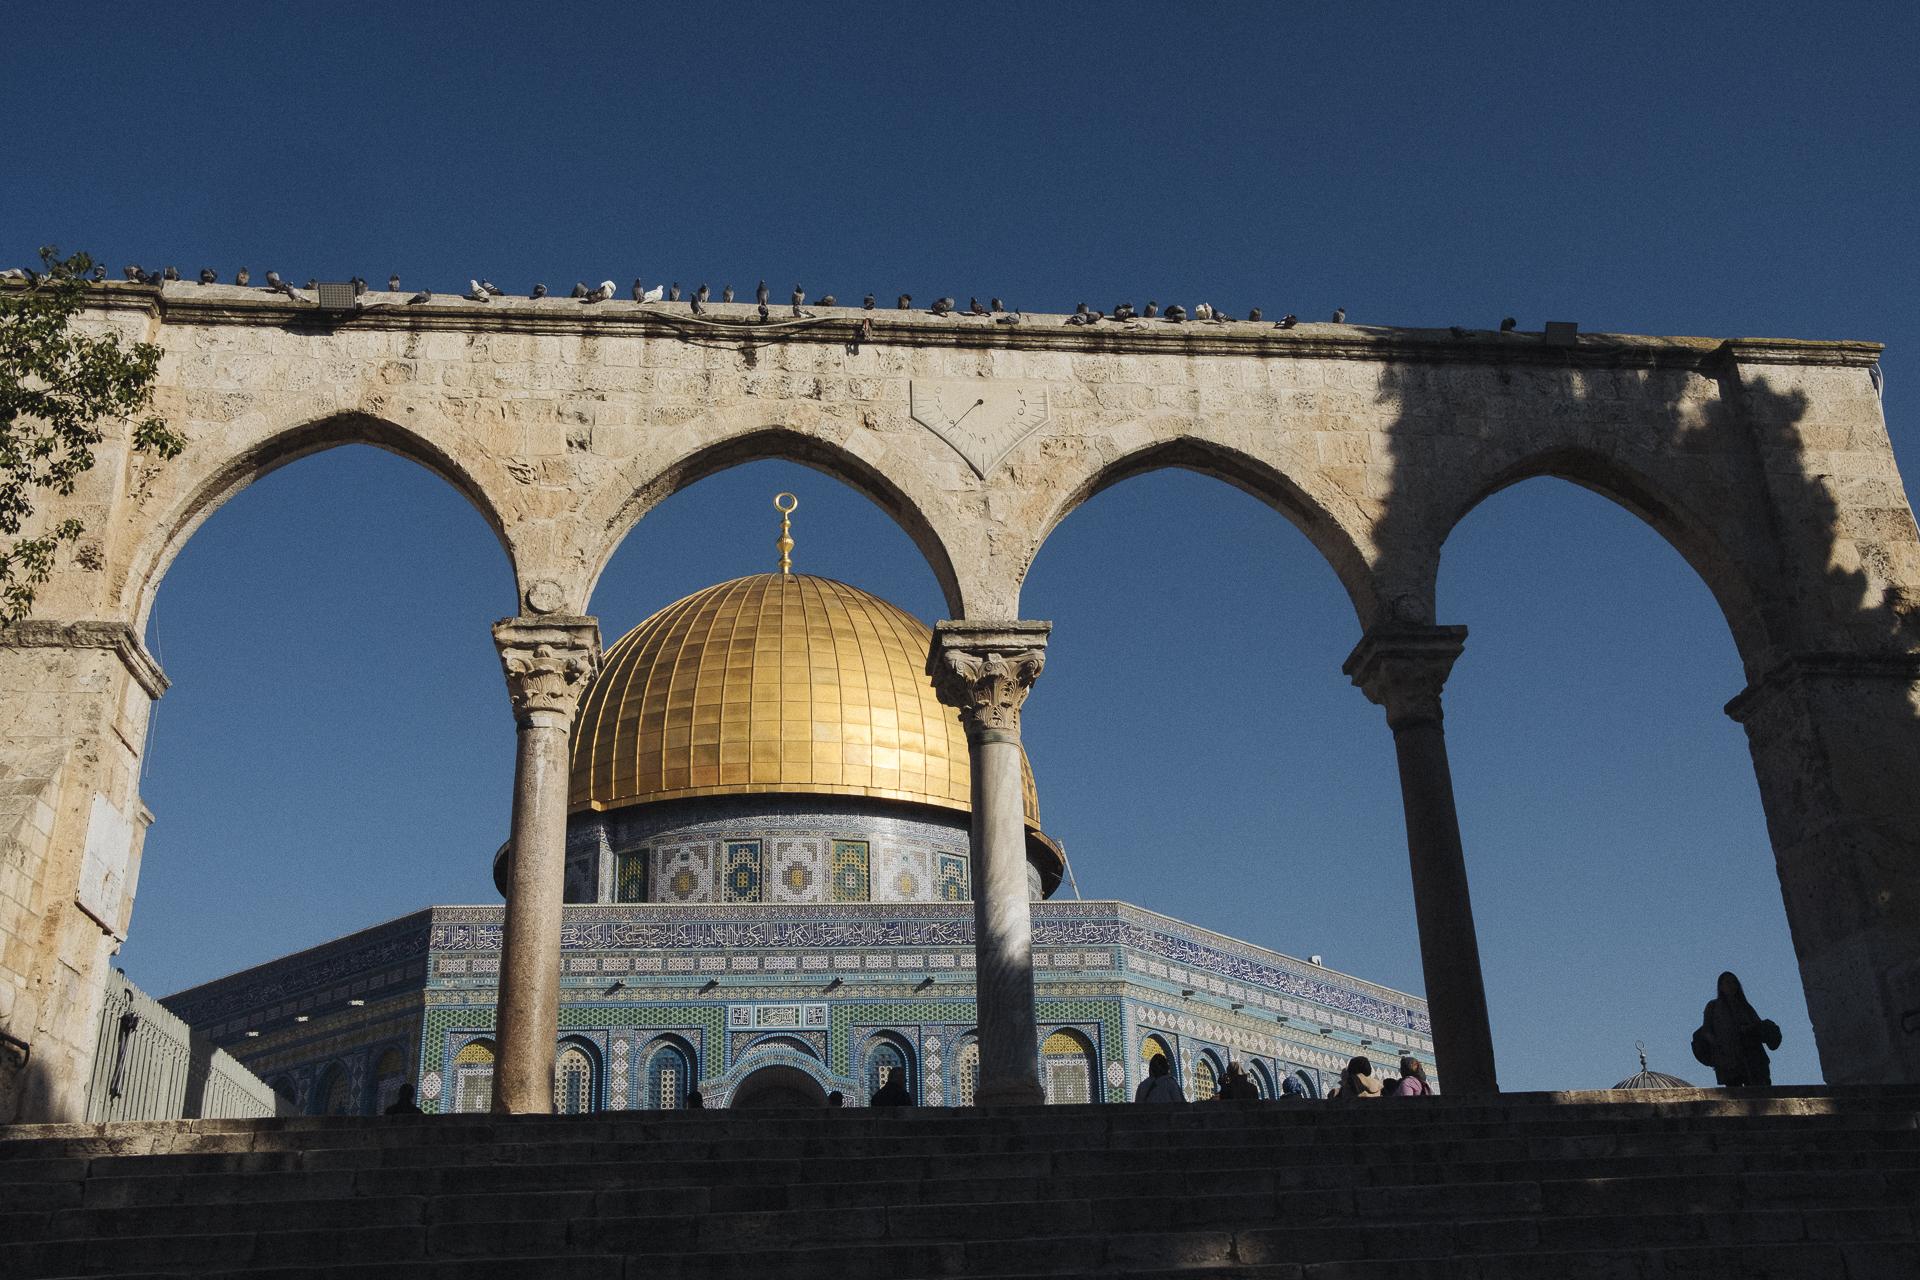 Au nom de tous les Saints - Dome of the Rock, Jerusalem, February 13, 2020.
Dome du...